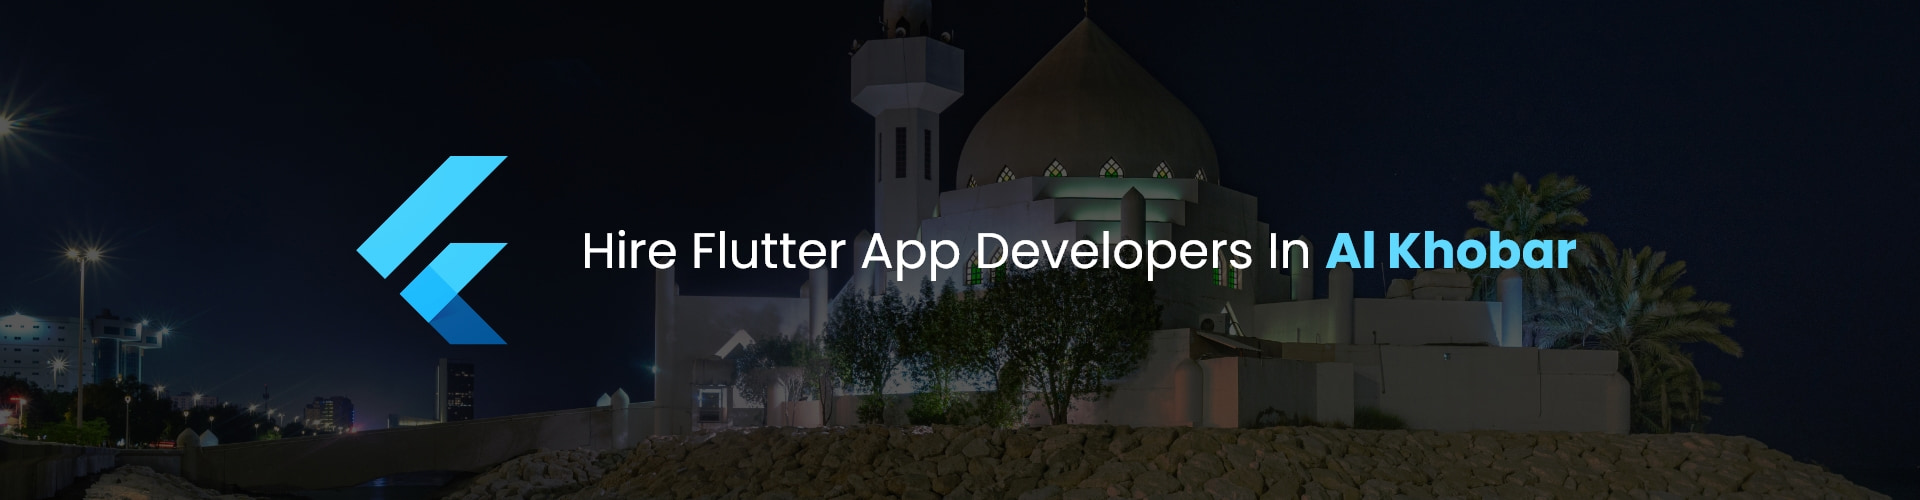 hire flutter app developers in Al Khobar